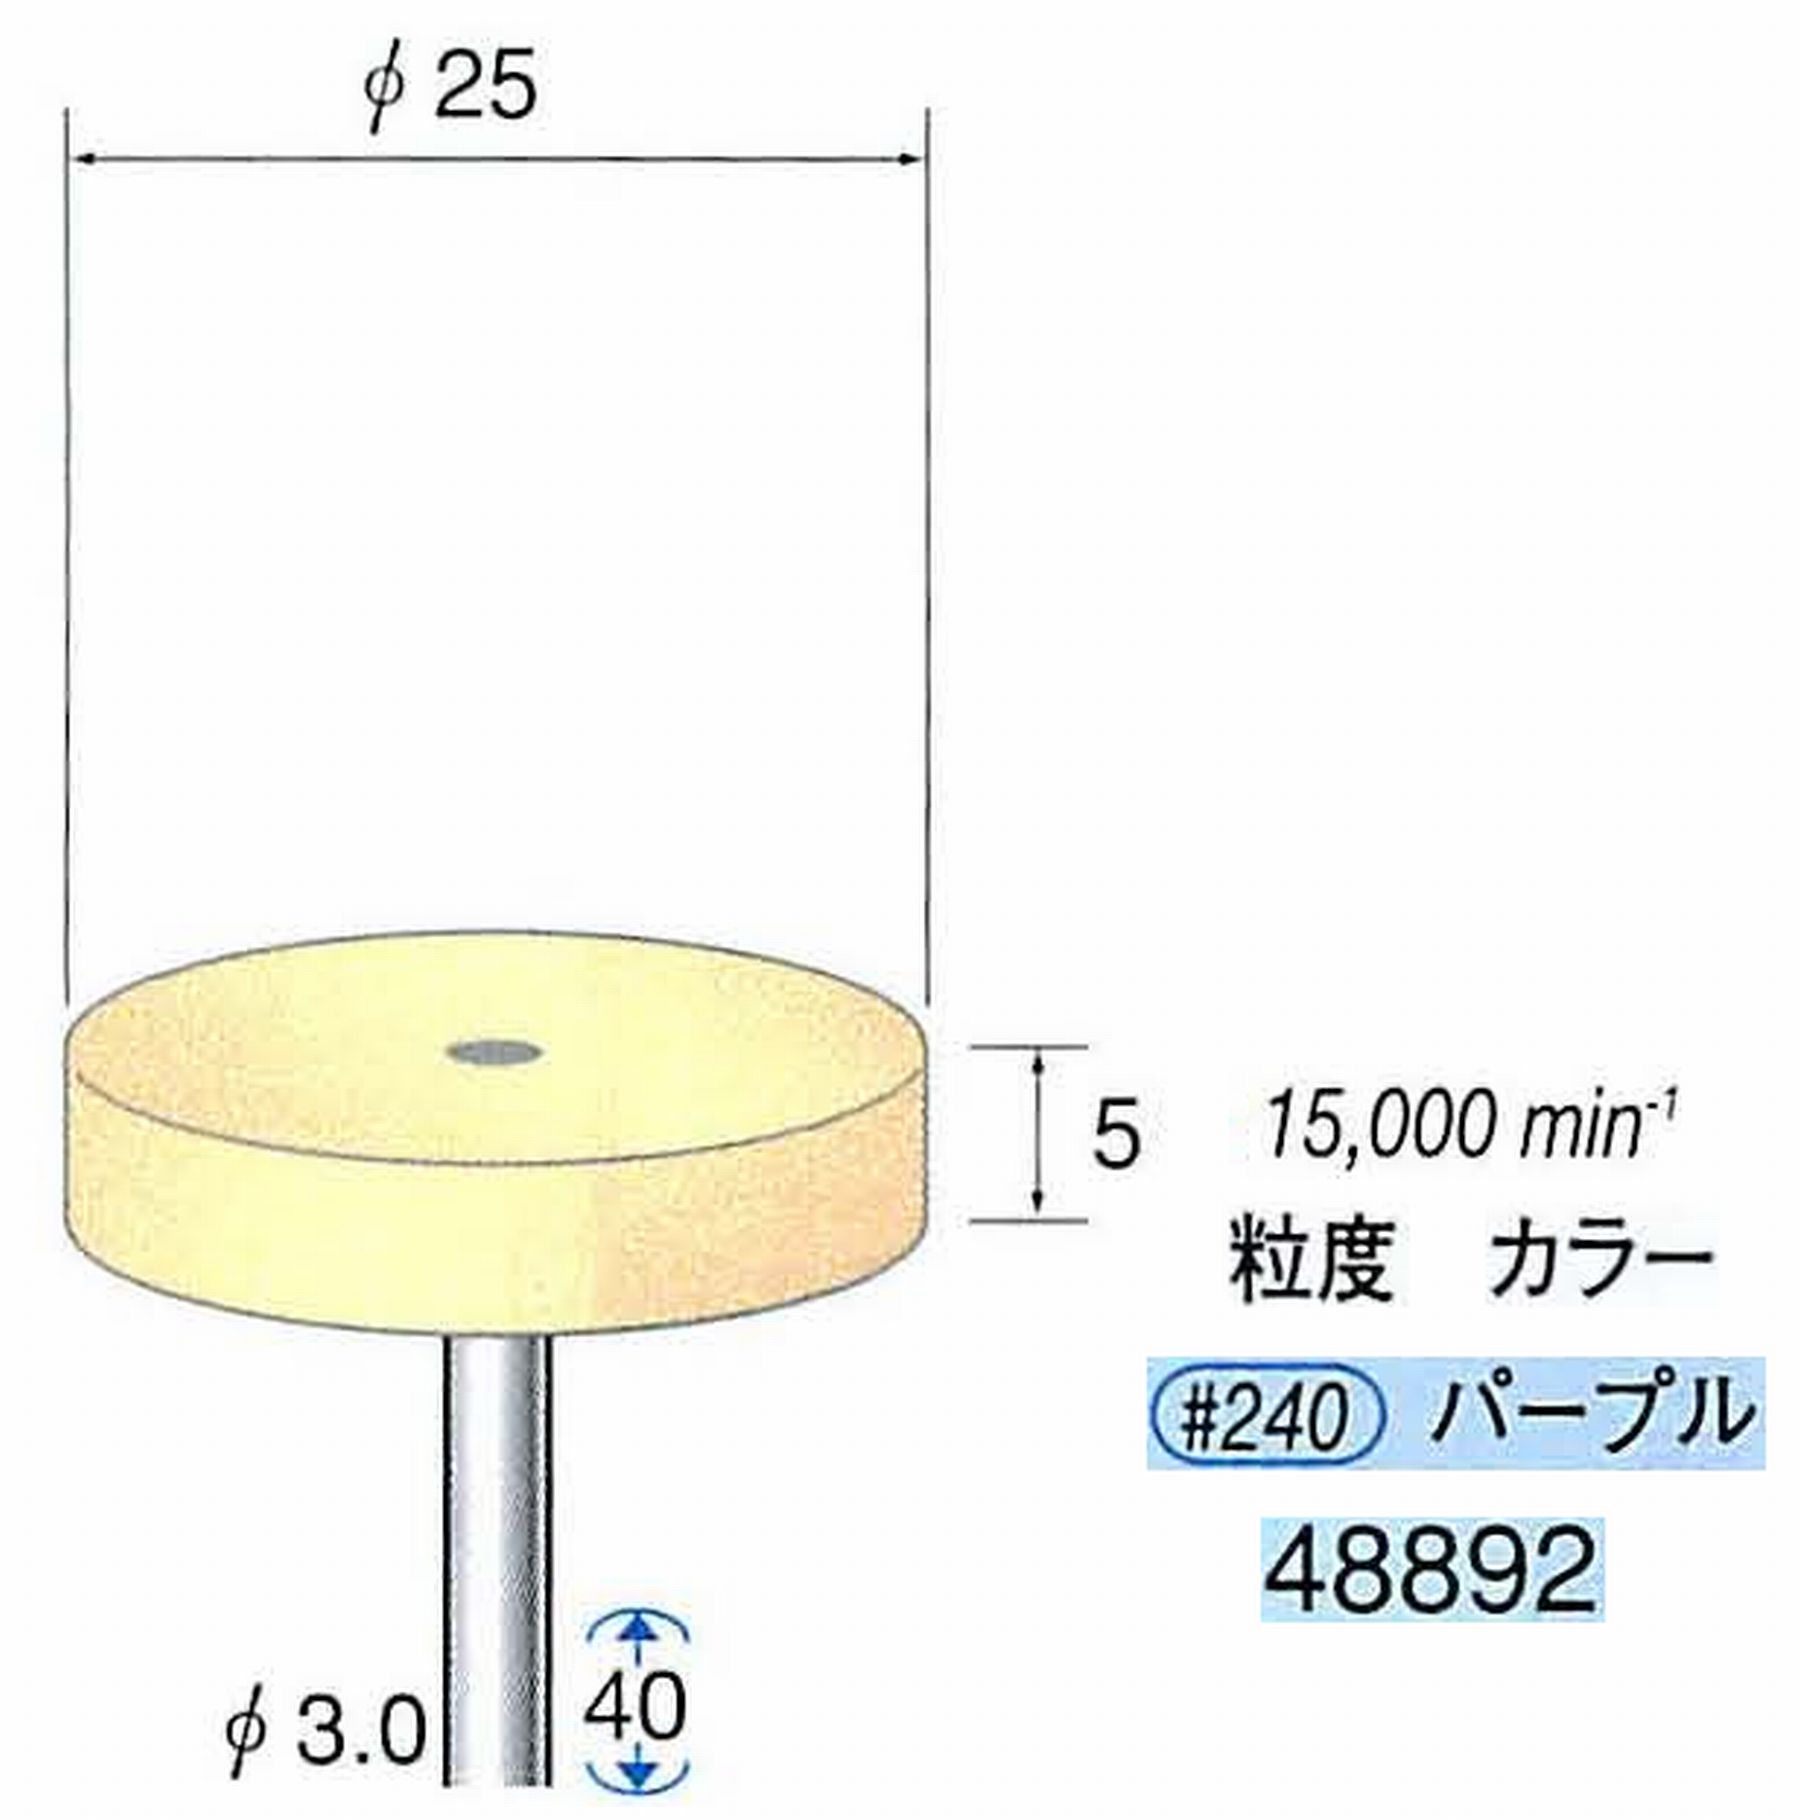 ナカニシ/NAKANISHI ポリッシュサンダー 軸径(シャンク)φ3.0mm 48892